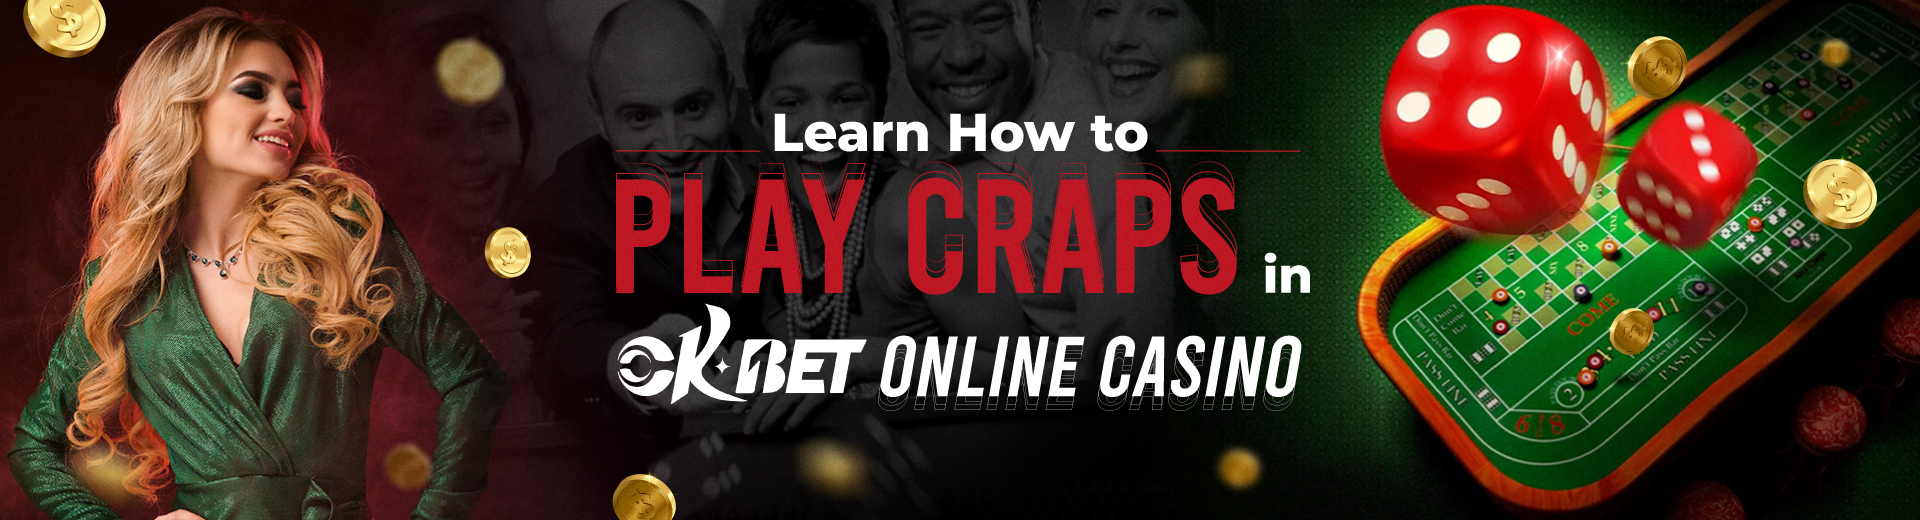 How to Play Craps for Beginners in OKBET Online - OKBET online casino